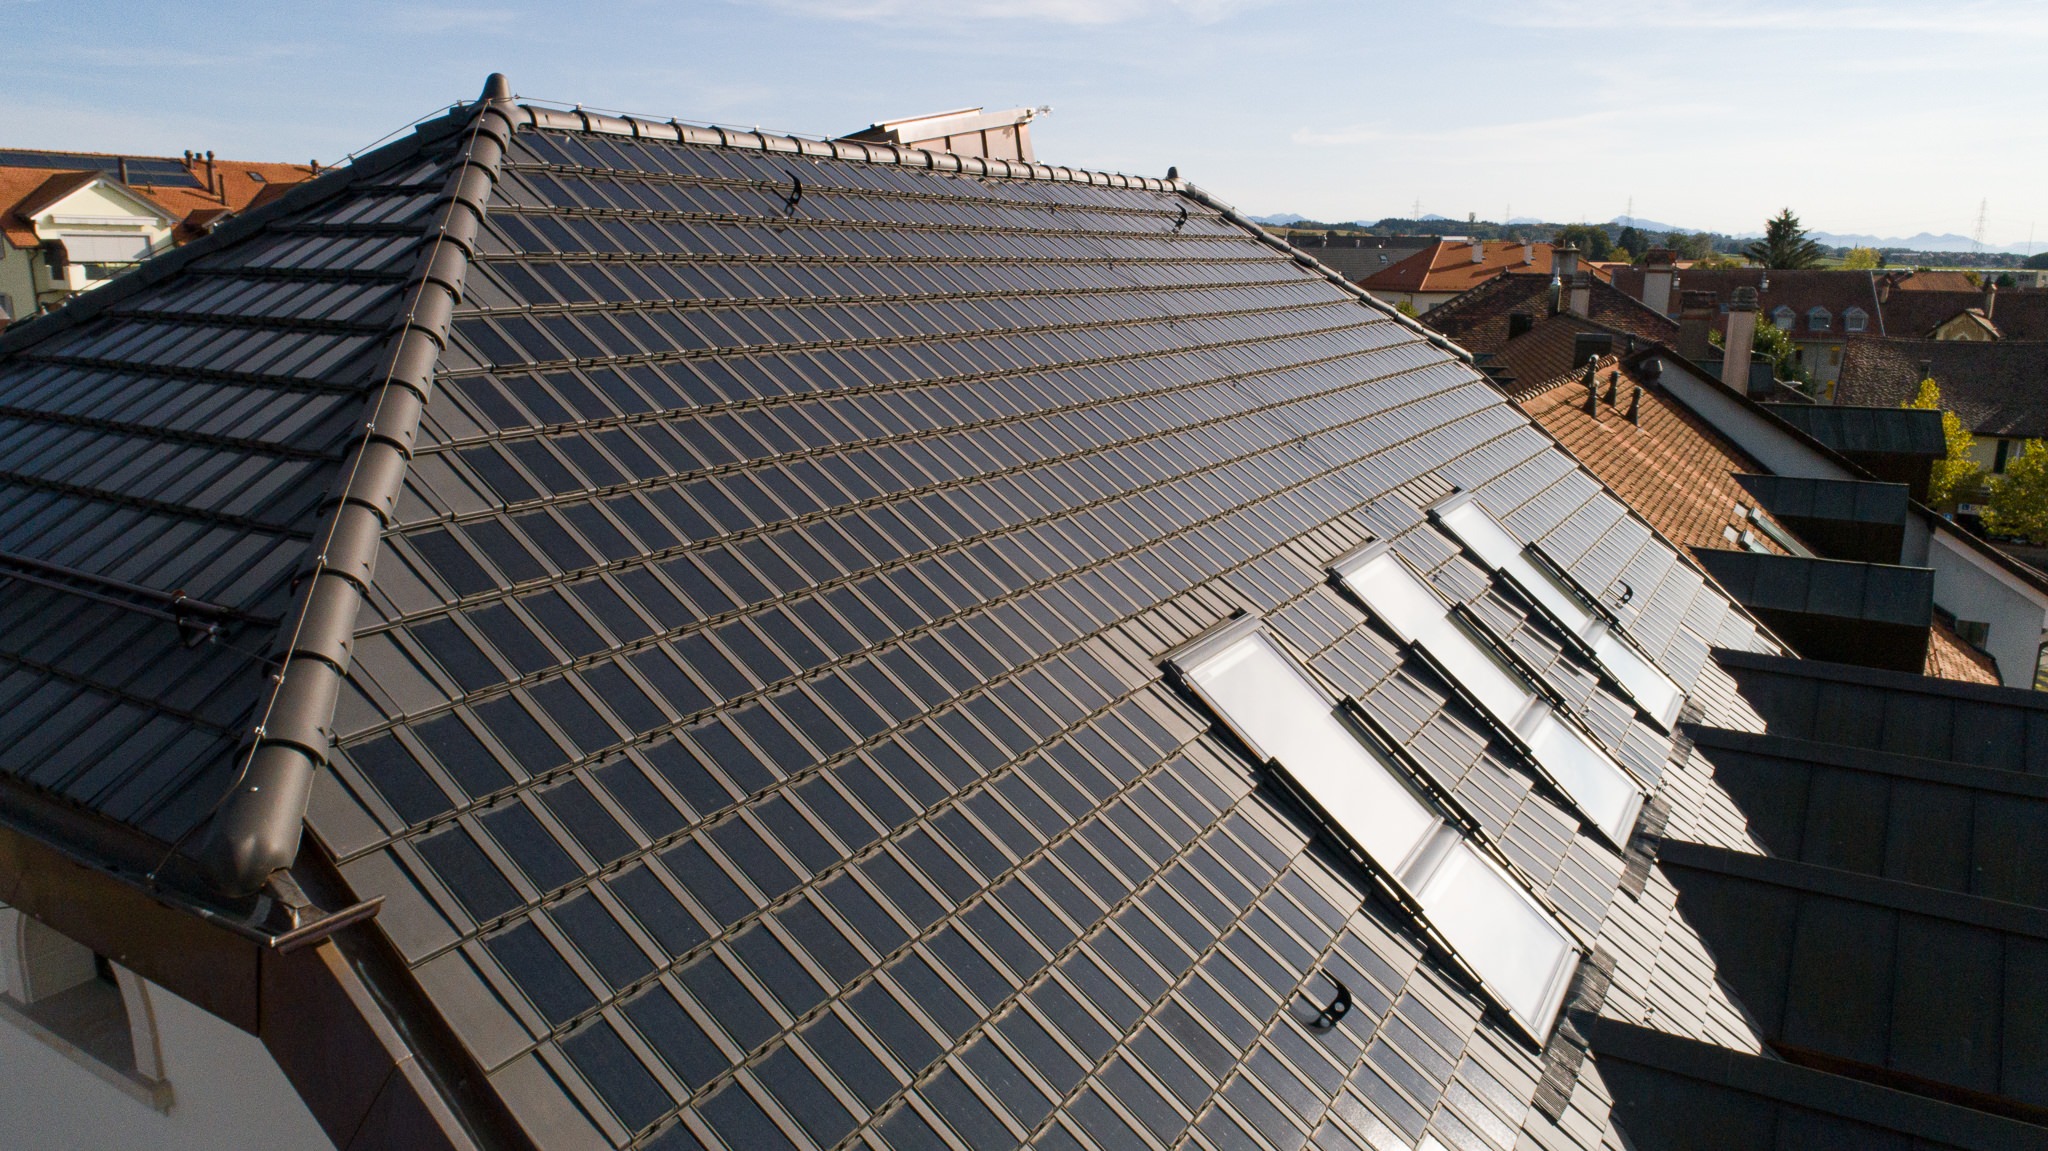 Raiffeisen Gros de Vaud, Echallens, eingedeckt mit Photovoltaik PAN 32 Dachziegeln von Gasser Ceramic, Aussenaufnahme